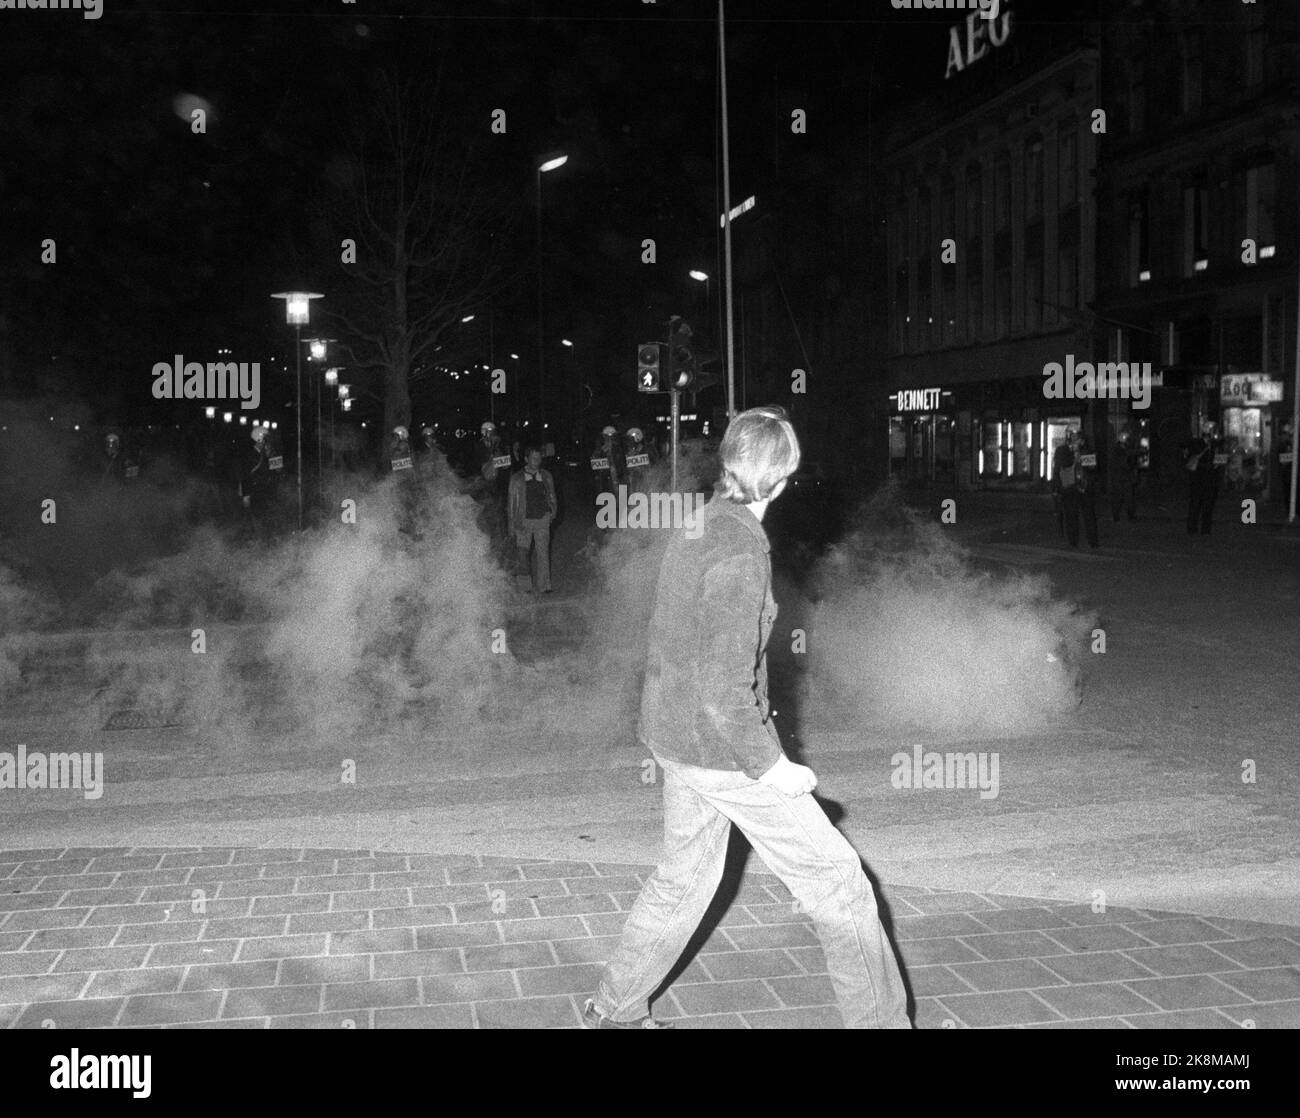 Oslo 19800501 Krawalle in der Innenstadt von Oslo Nacht bis 1.. Mai. Die Polizei nutzte Tränengas gegen die Jugendbanden während der Unruhen. Foto Erik Thorberg / NTB / NTB Stockfoto